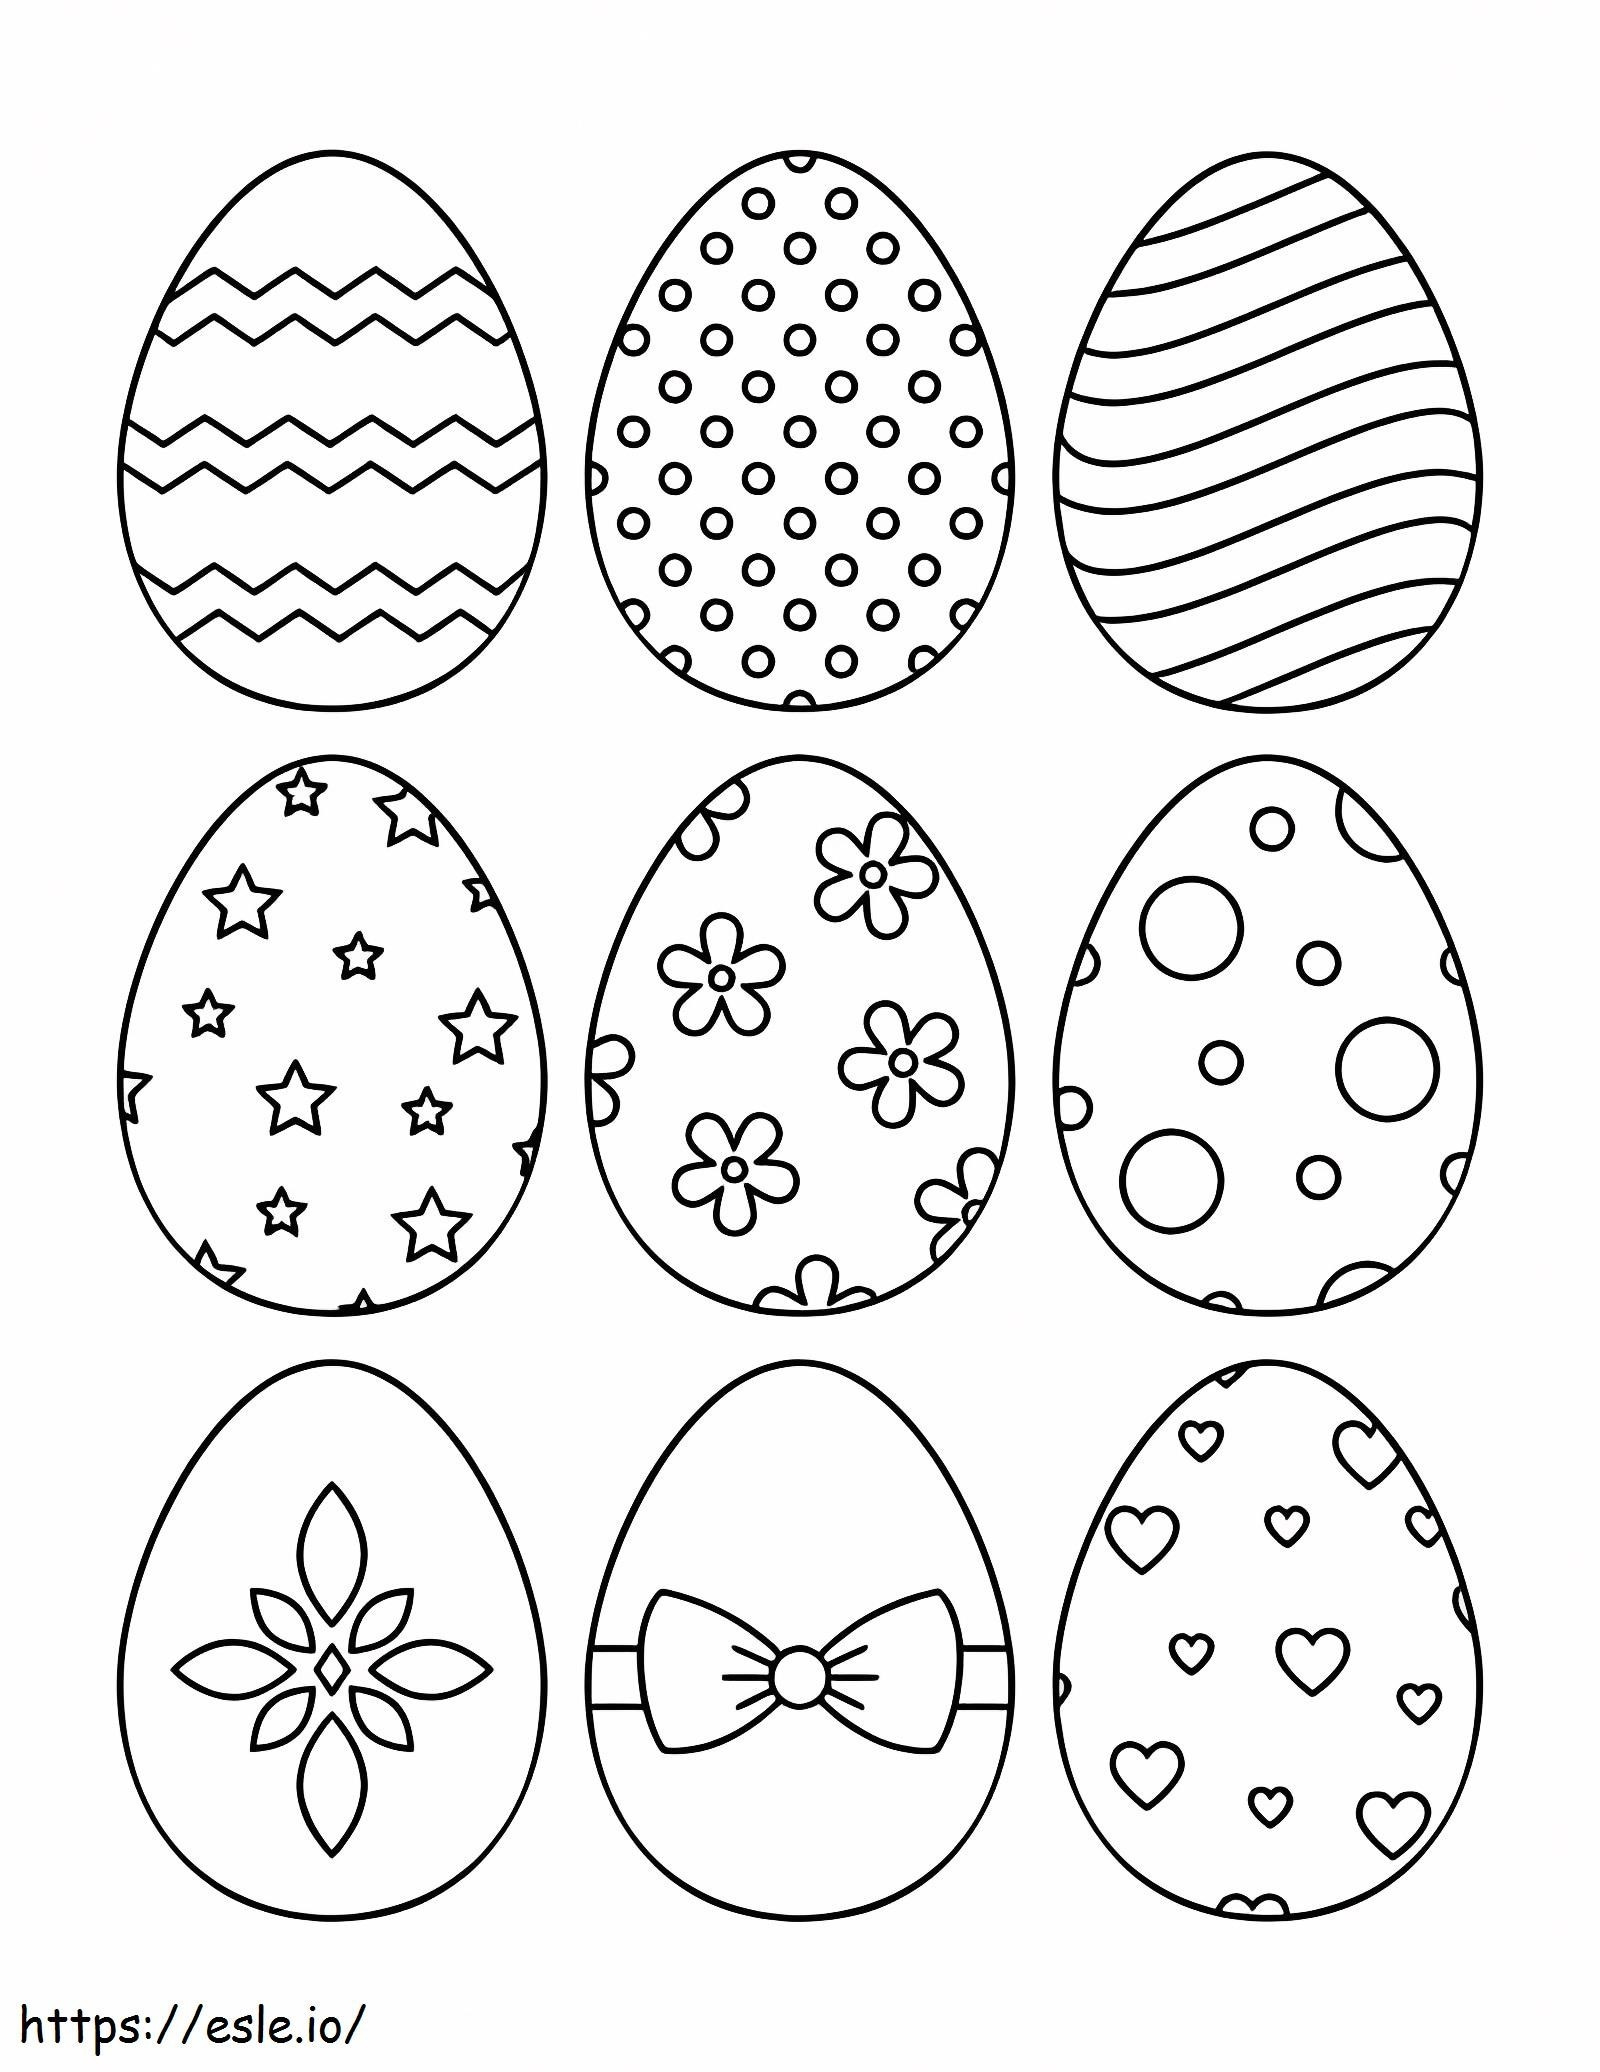 Nove uova di Pasqua da colorare